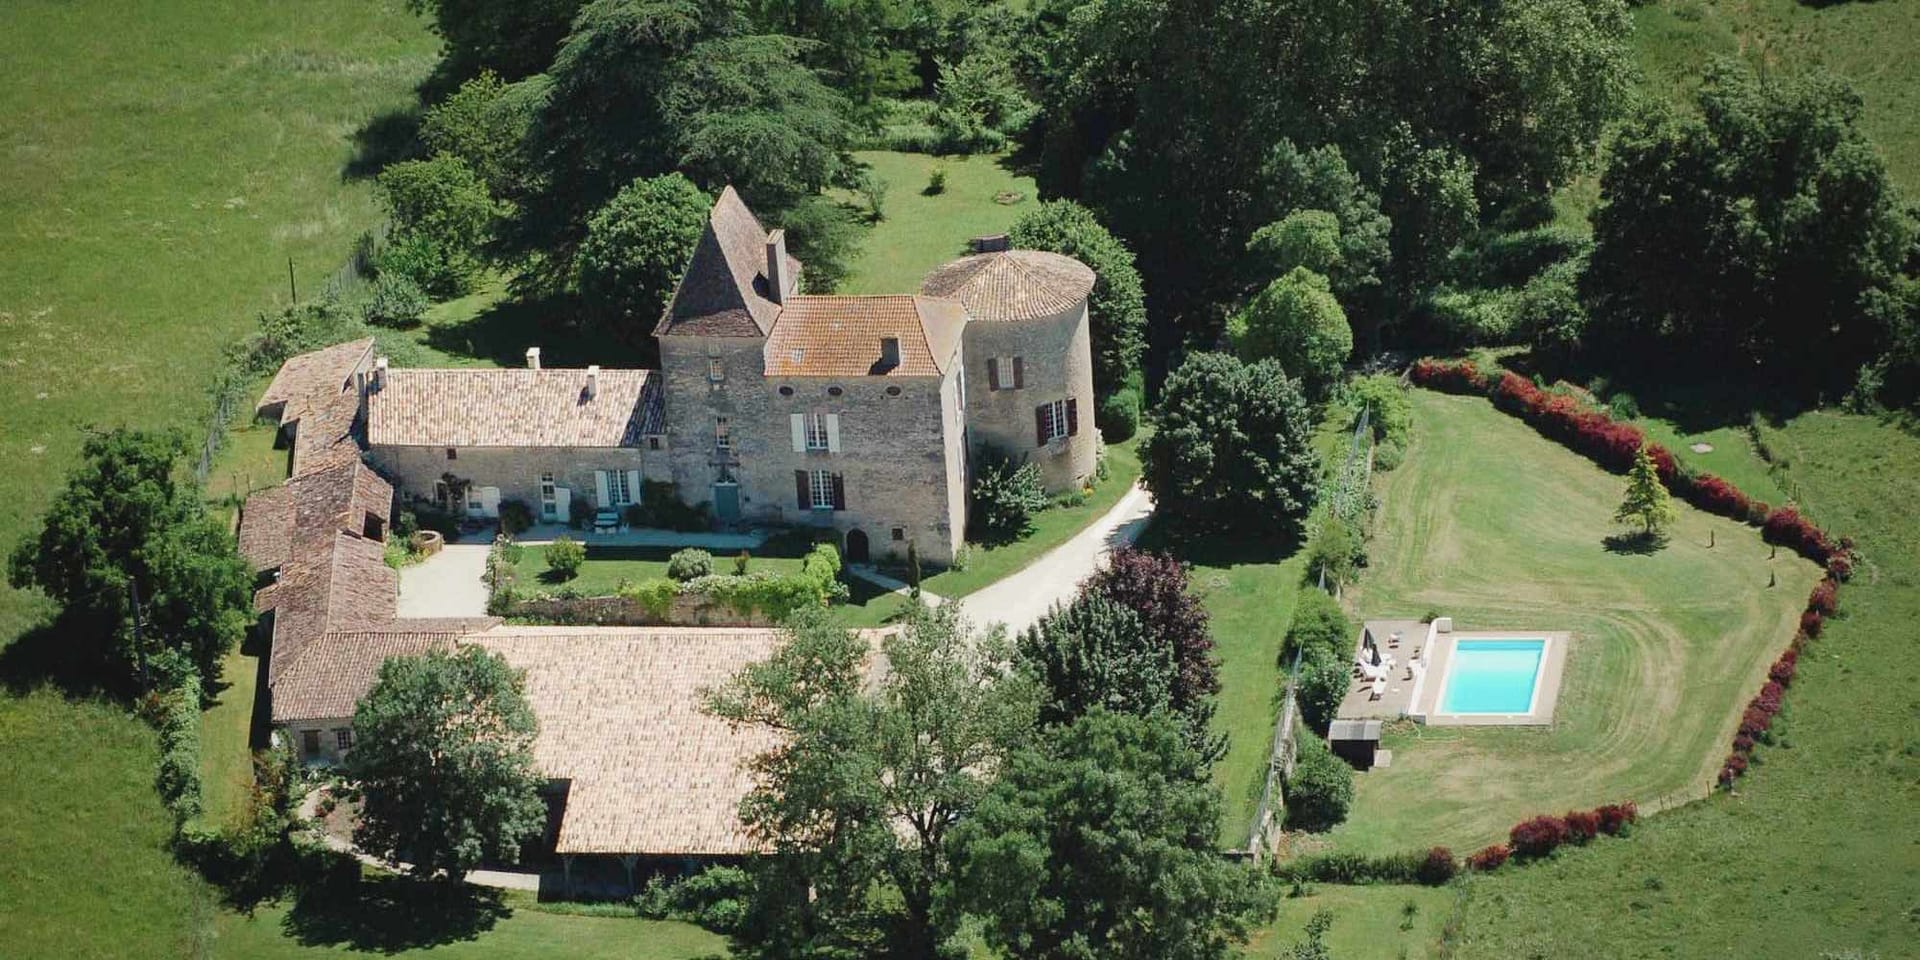 Chateau-barayre-french wedding-venue